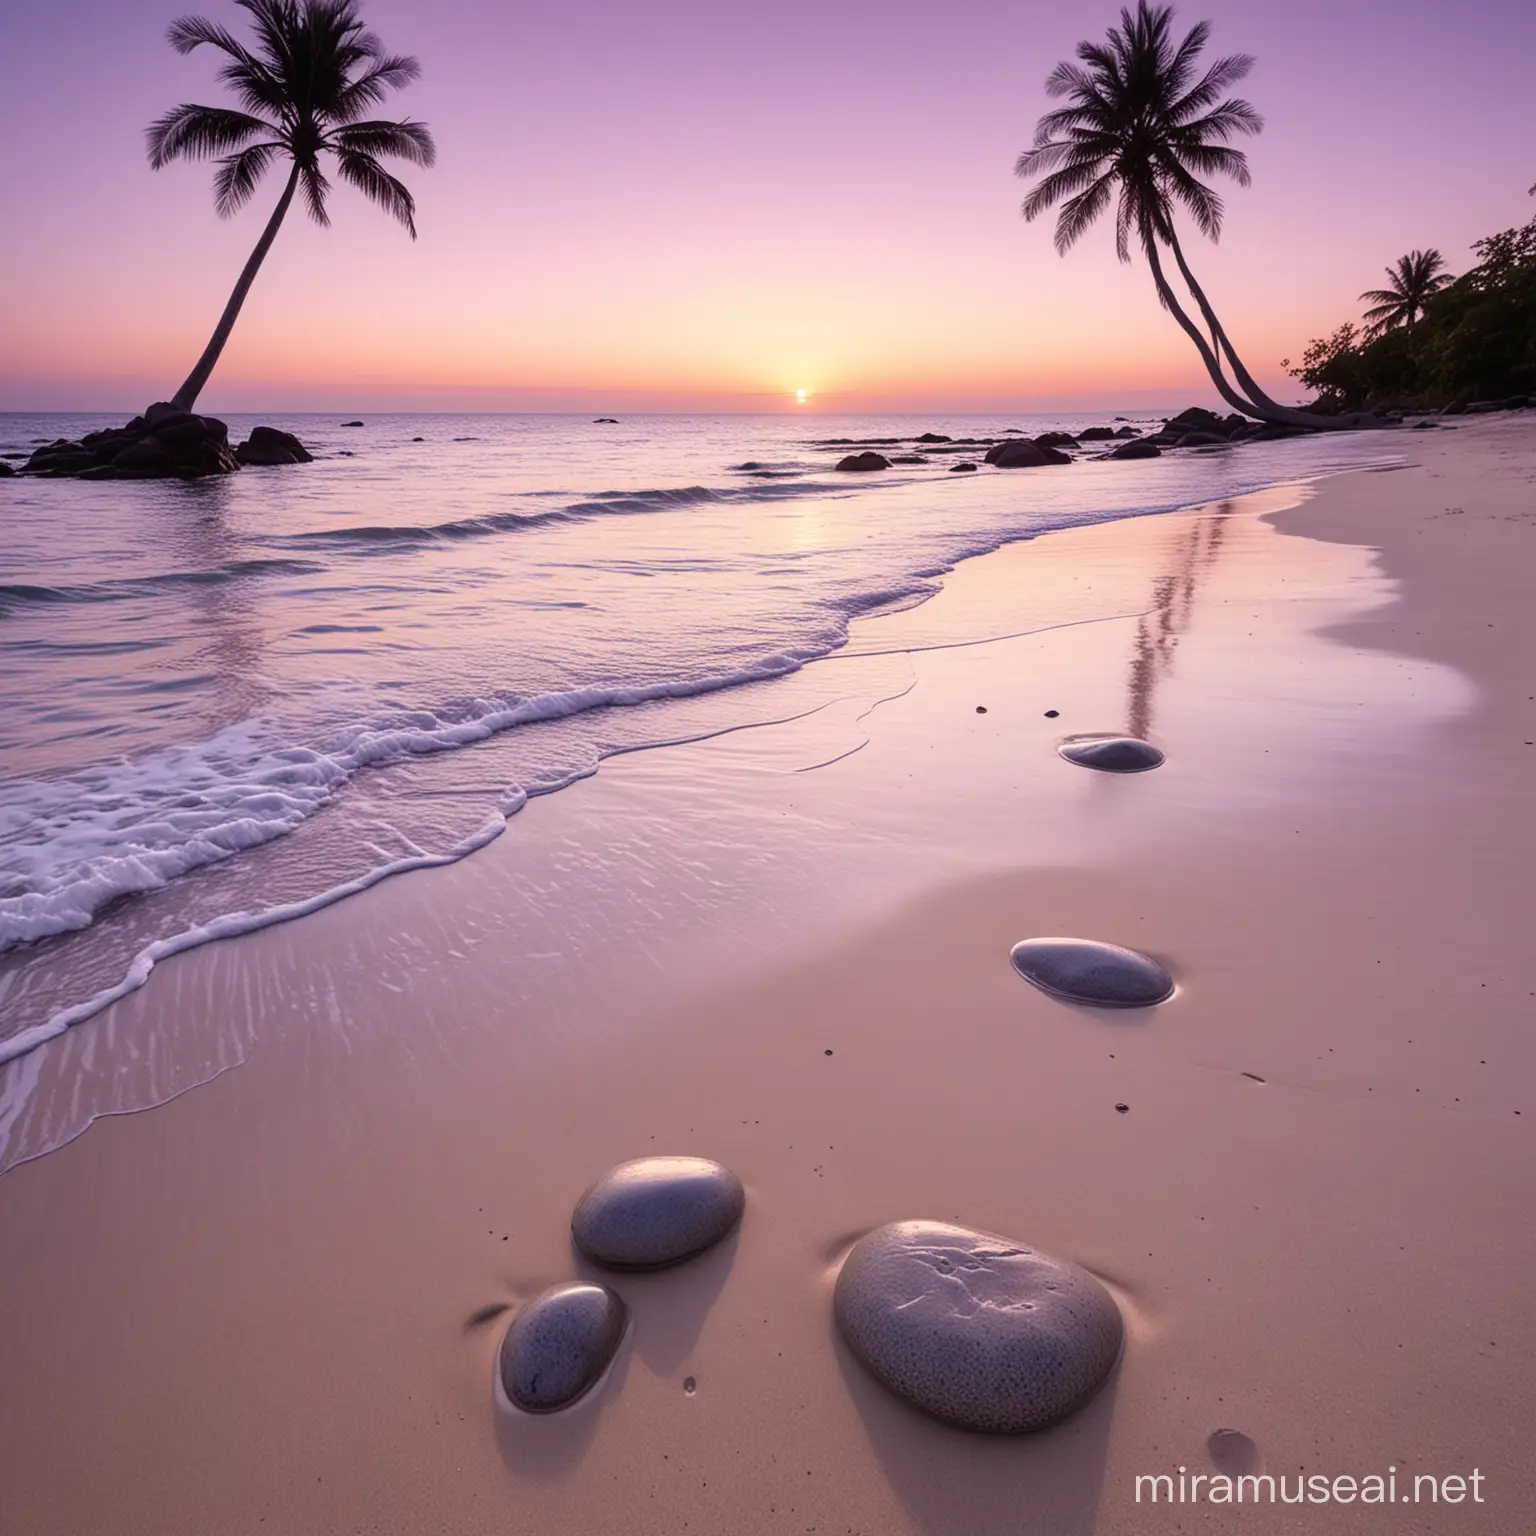 Paisaje de playa paradiasica tranquila, en tonos malva claro, con 4 piedras redondas de color gris con vetas blancas juntas en la lejanía. Debe ser a la puesta de sol y debe verse 3 palmeras en color morado